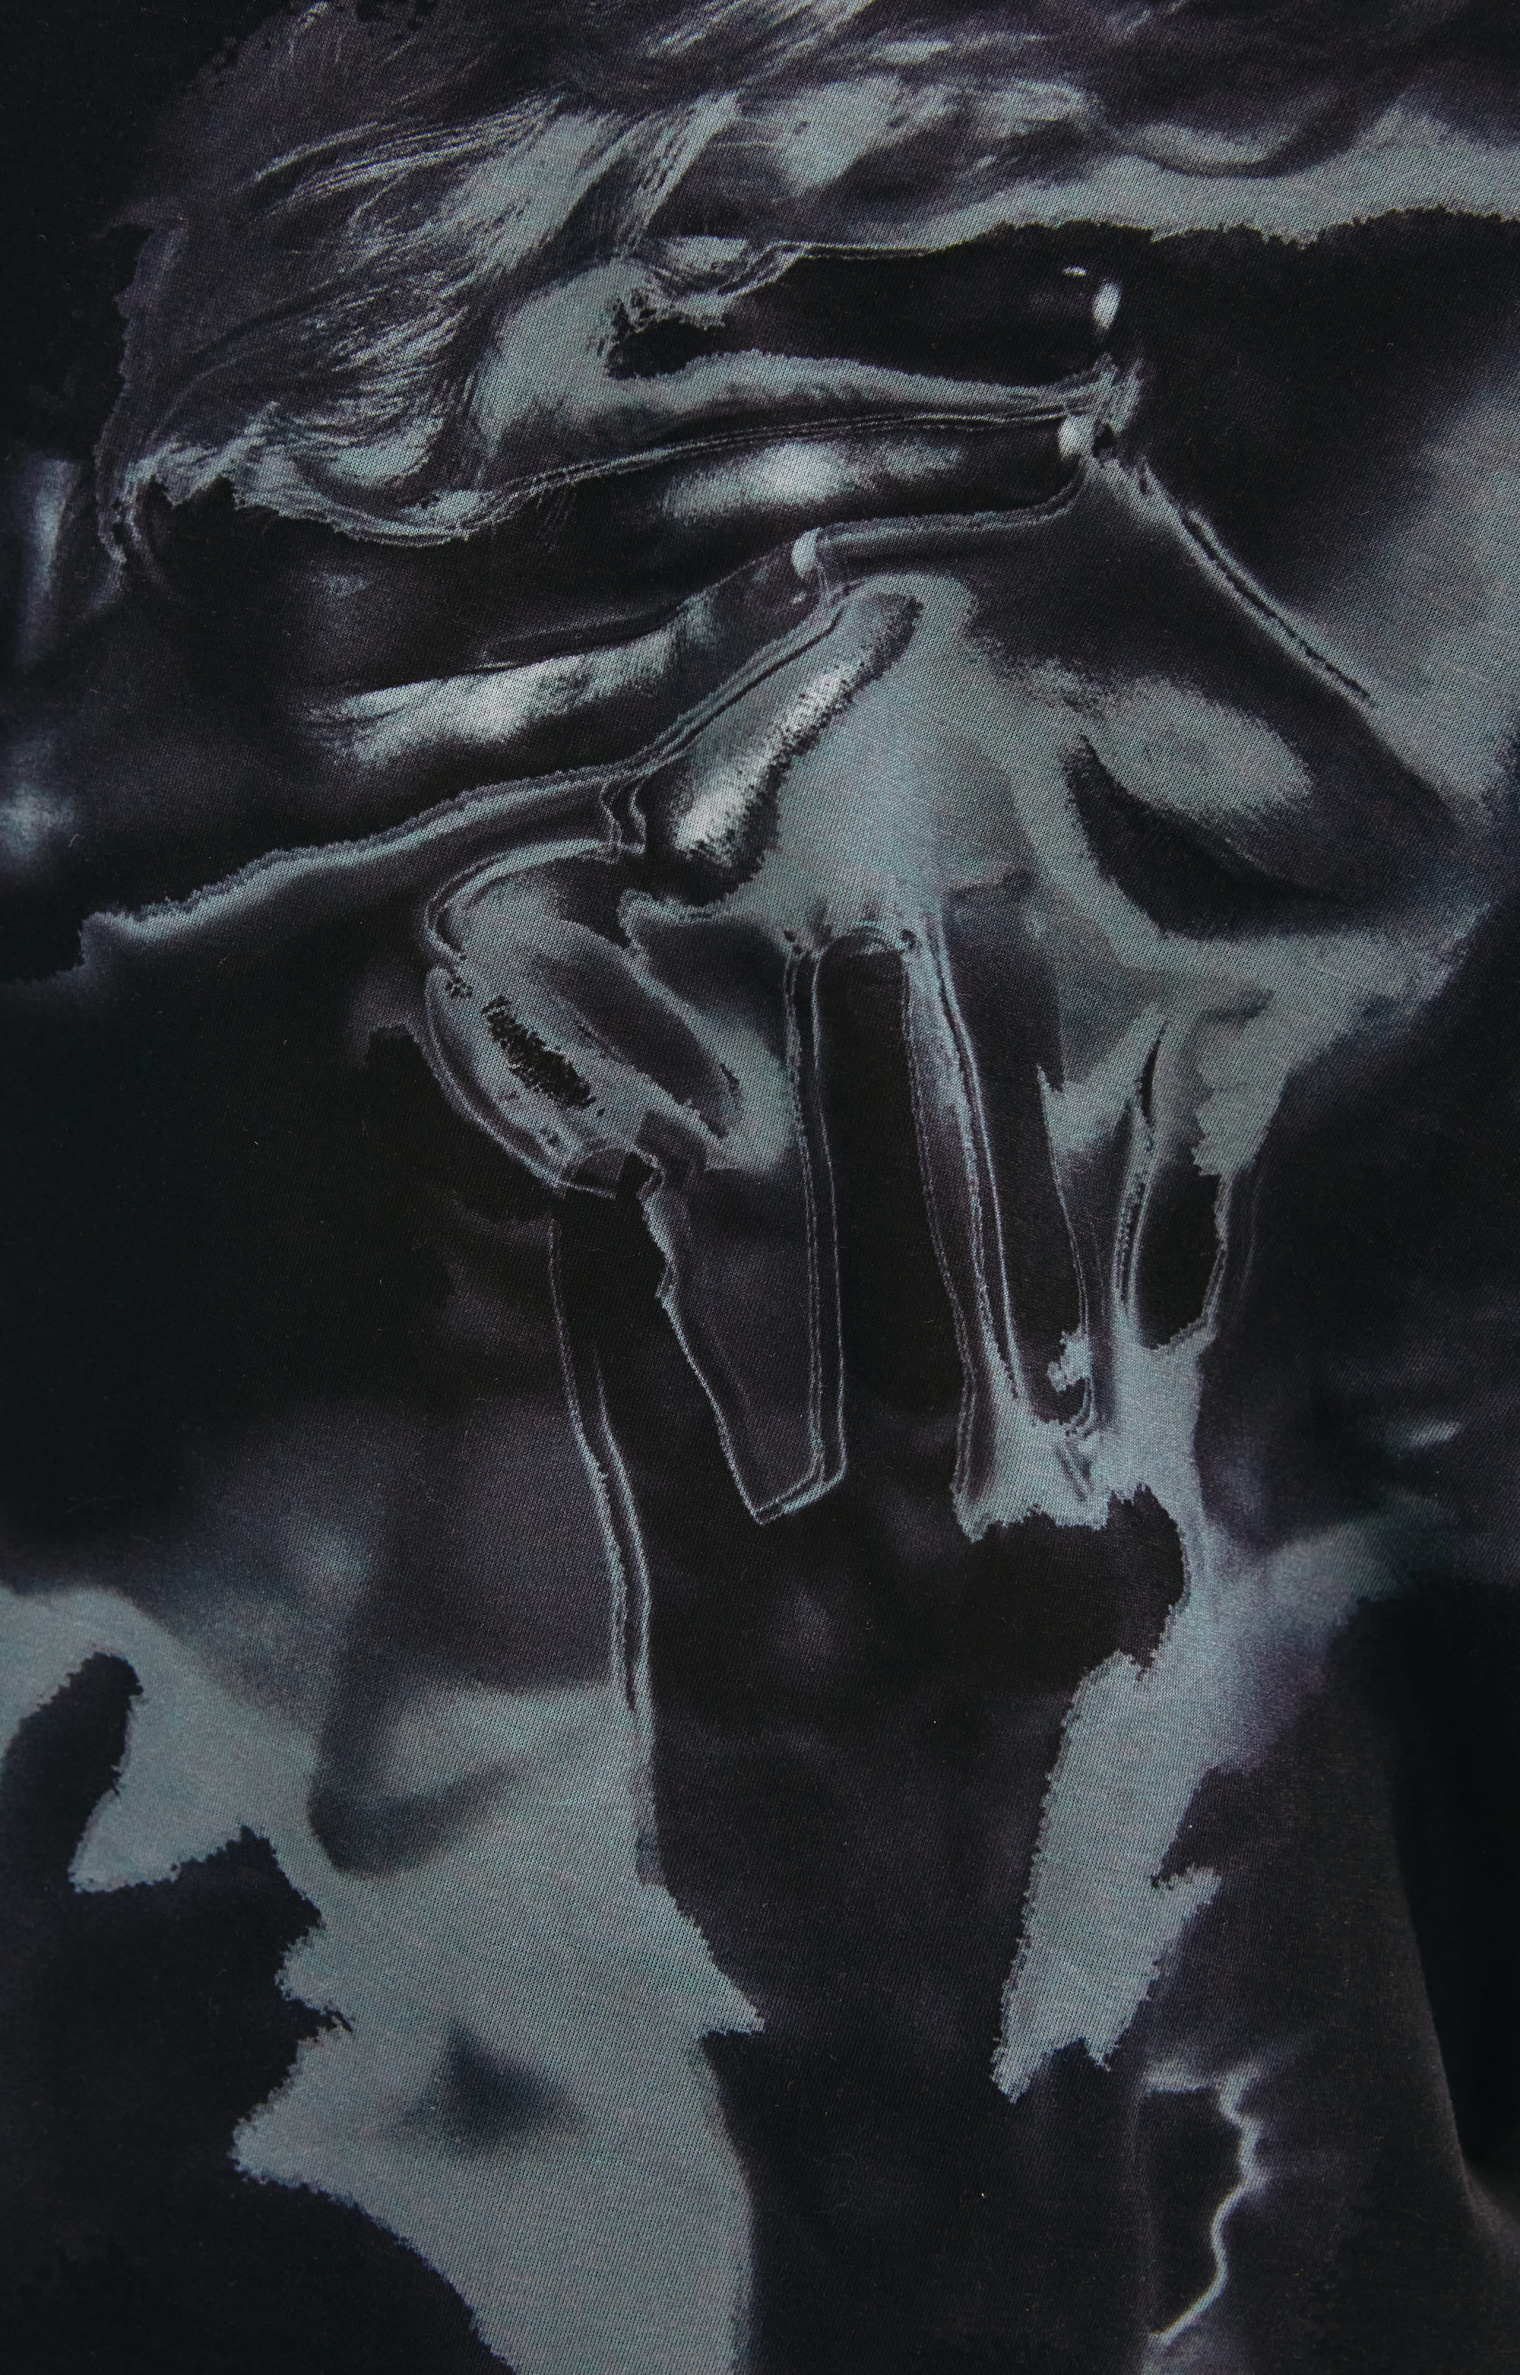 Yohji Yamamoto Черная футболка с эскизным принтом